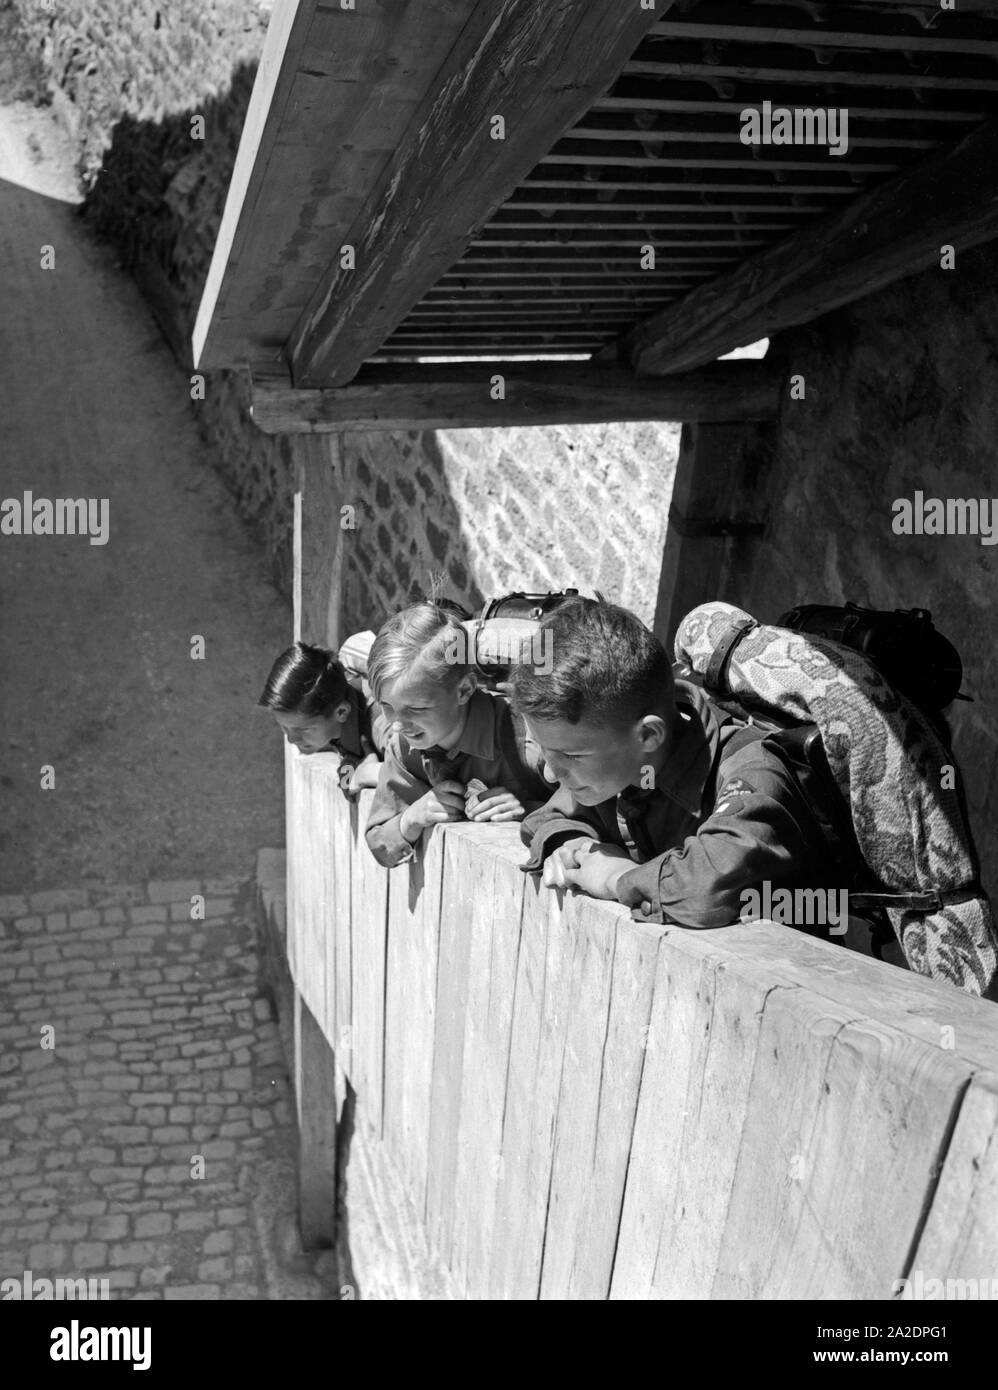 Drei Hitlerjungen kommen auf einer Wandertour durch Deutschland, 1930er Jahre. Three Hitler youths wandering through Germany, 1930s. Stock Photo